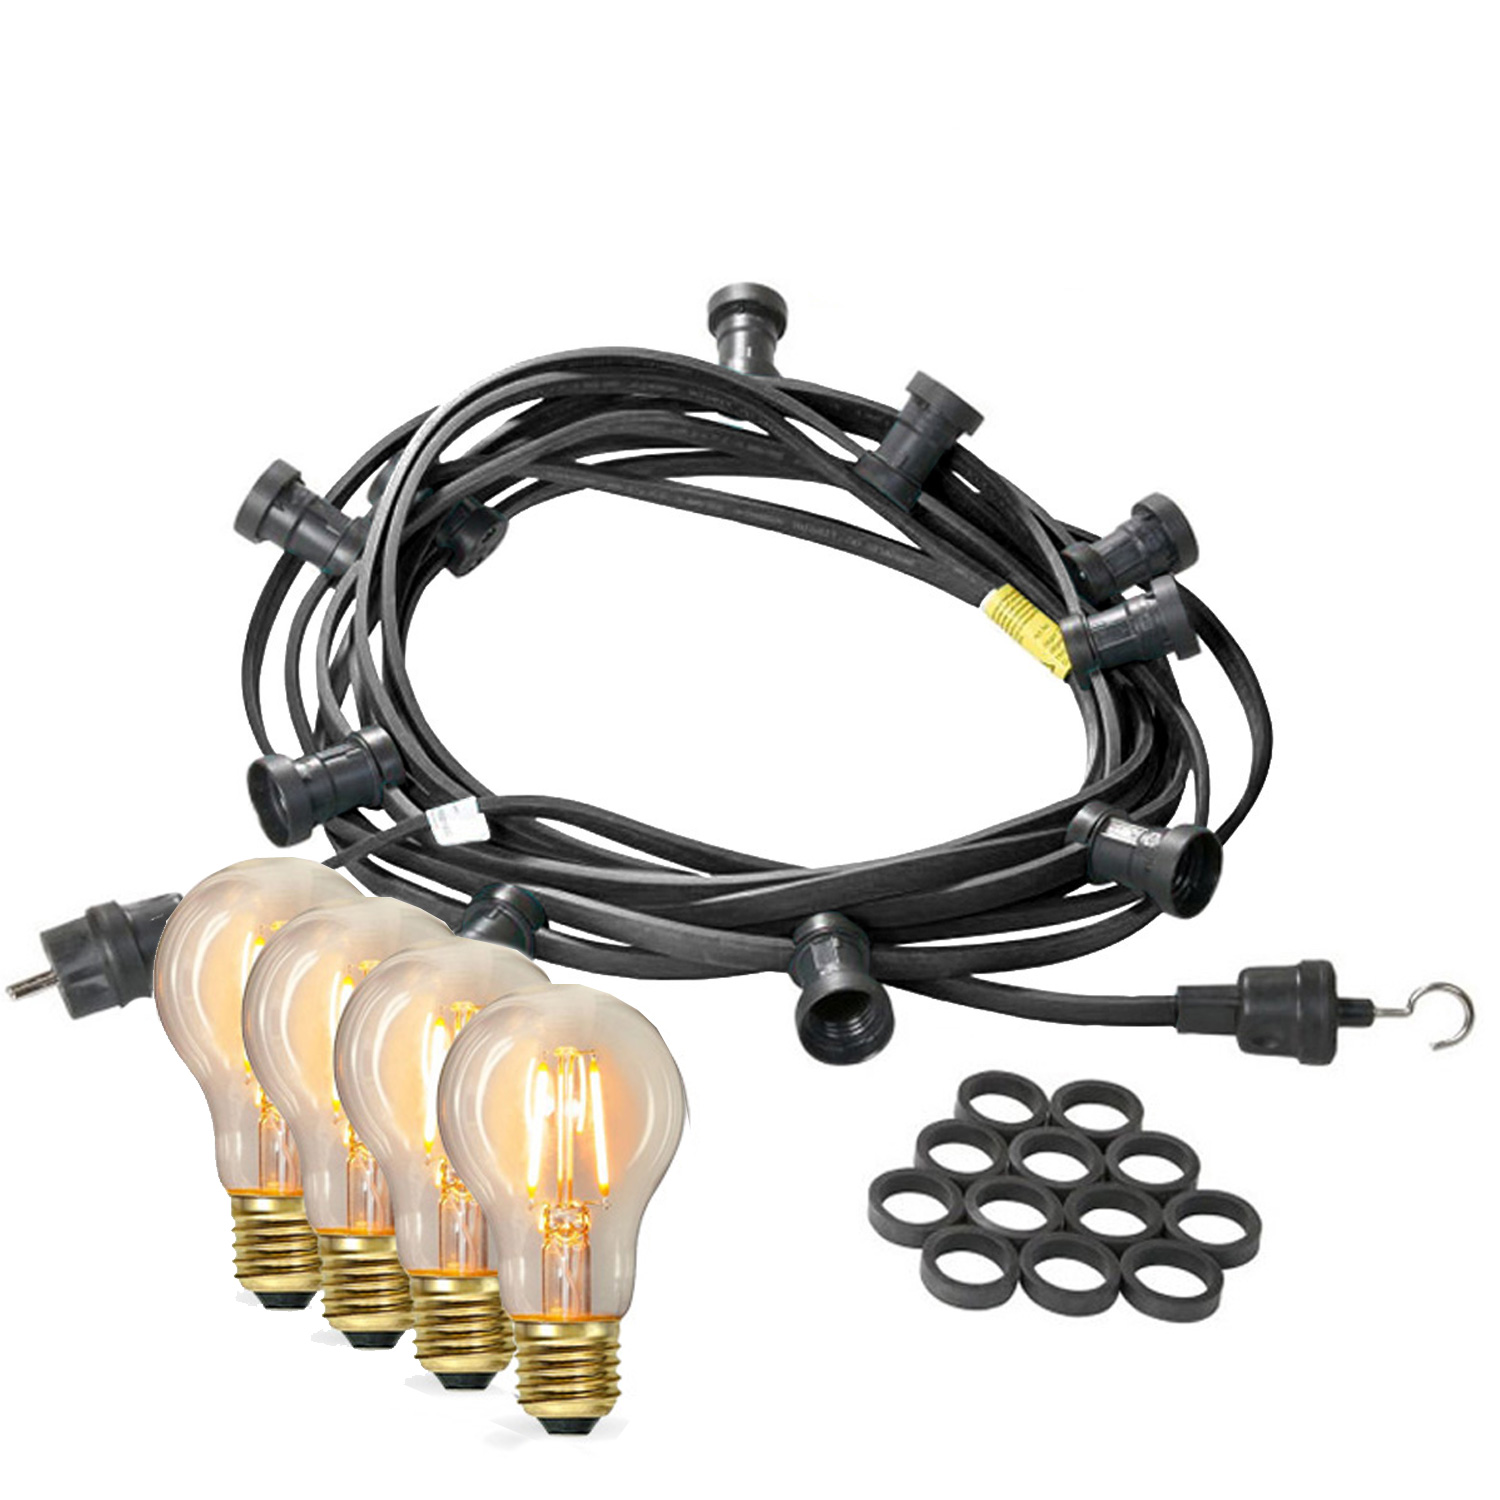 Illu-/Partylichterkette 5m - Außenlichterkette - Made in Germany - 10 x Edison LED Filamentlampen